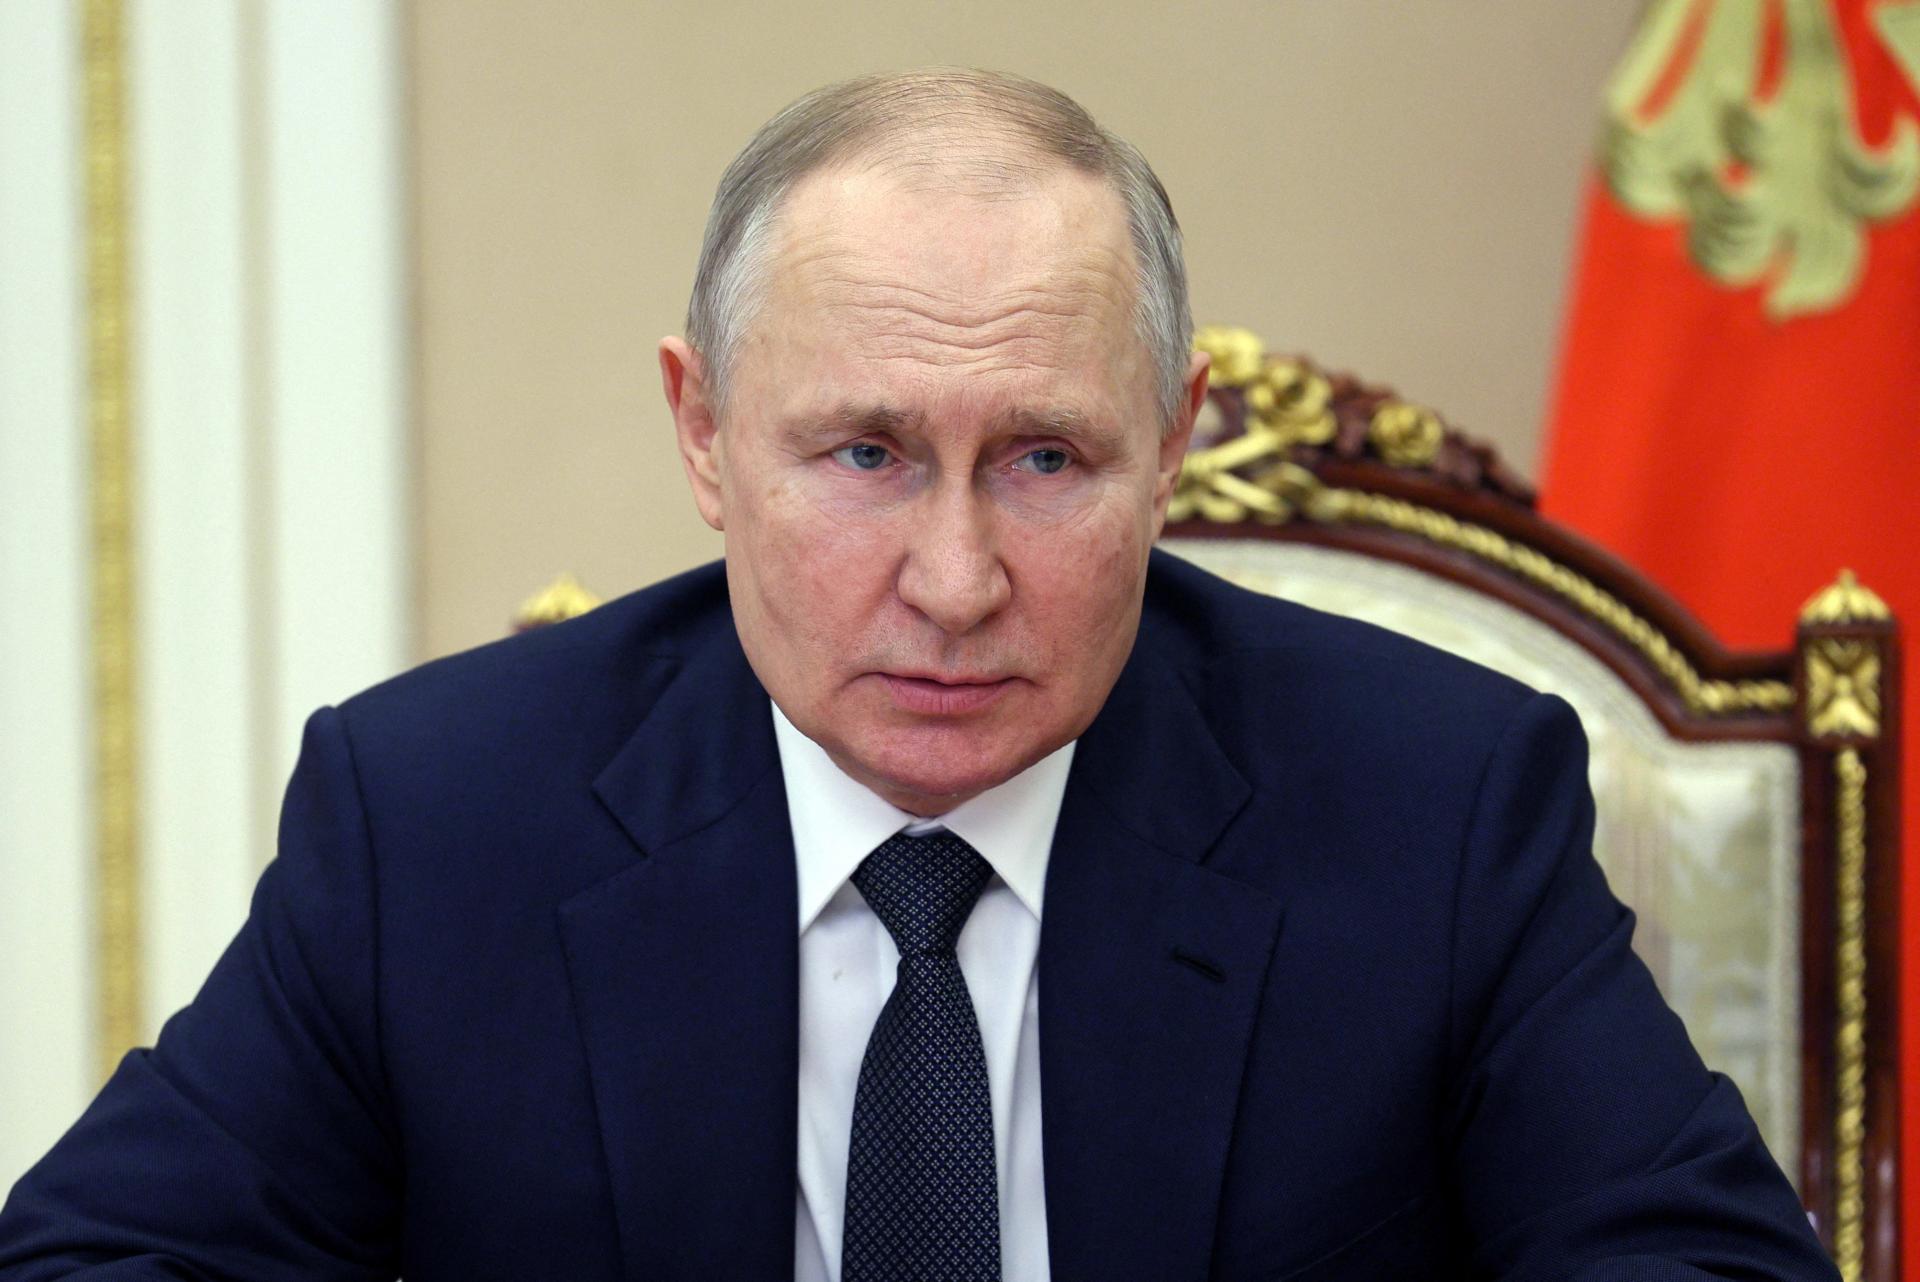 Putin sa snaží o celkové víťazstvo na Ukrajine, spolieha sa na naťahovanie vojny, tvrdí americký ištitút